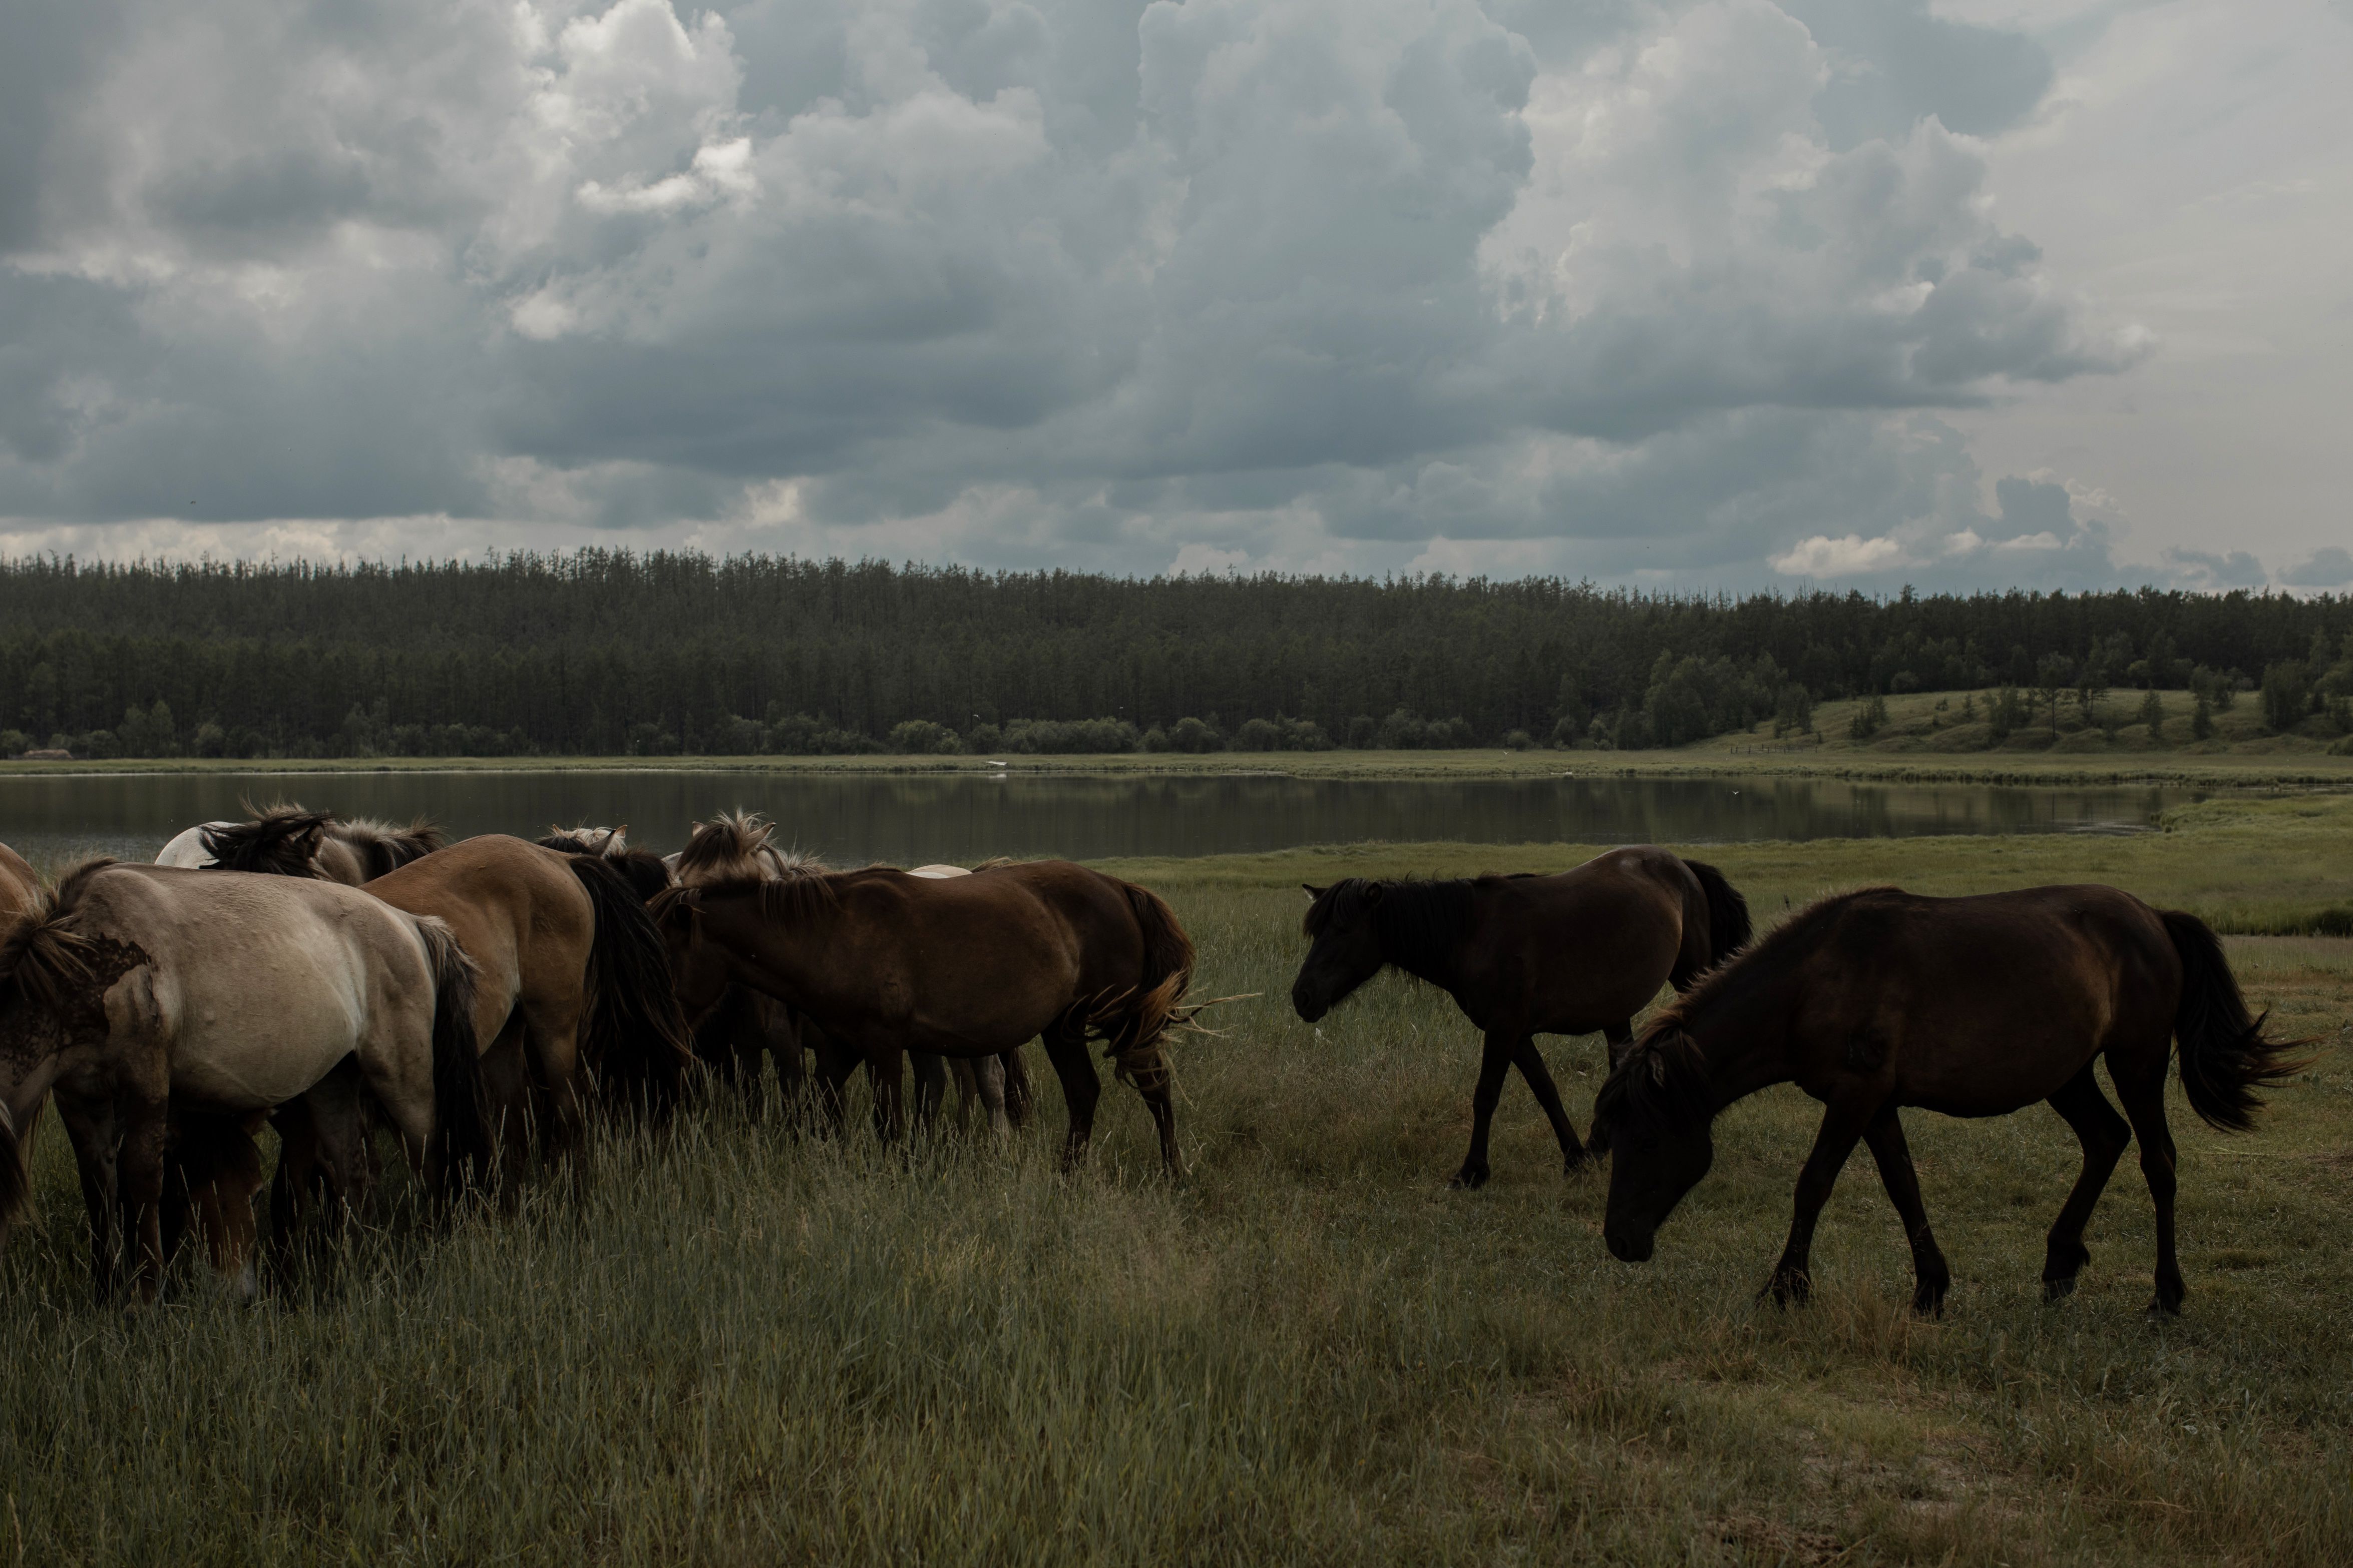 En Yakutia, los granjeros han remplazado a decenas de miles de vacas con caballos nativos que comen menos heno, pero producen menos leche. Además, el mercado para su carne es limitado. (Emile Ducke/The New York Times)